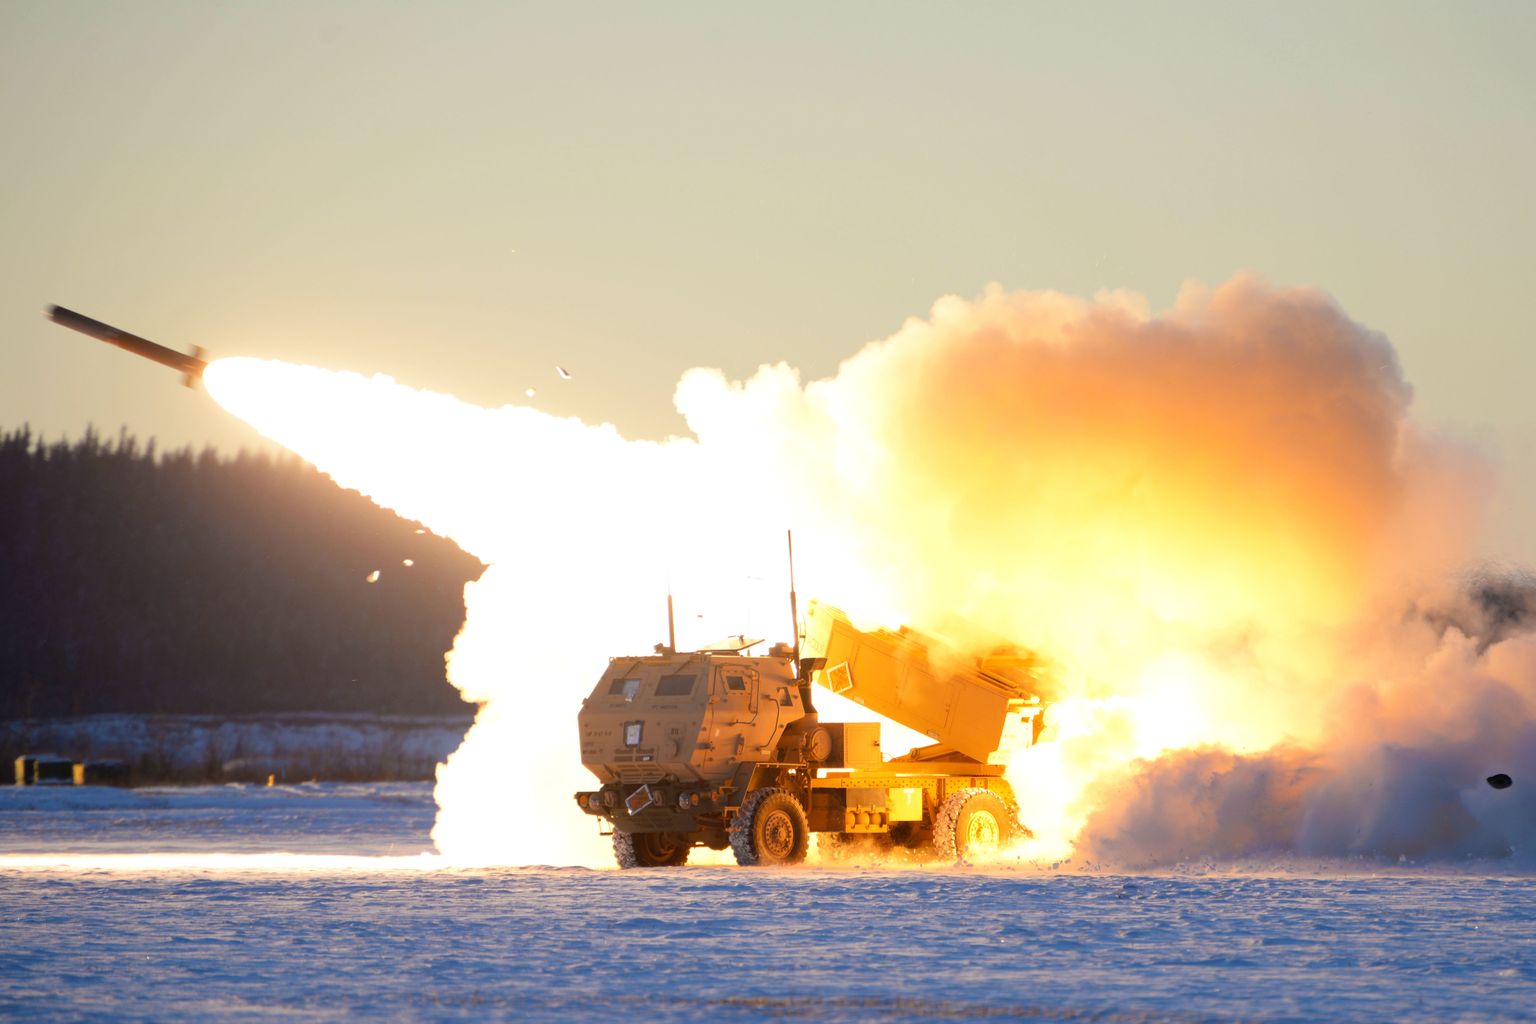 USA armee M142 suure liikuvusega suurtükiväe raketisüsteem (HIMARS) õppusel Alaskas.